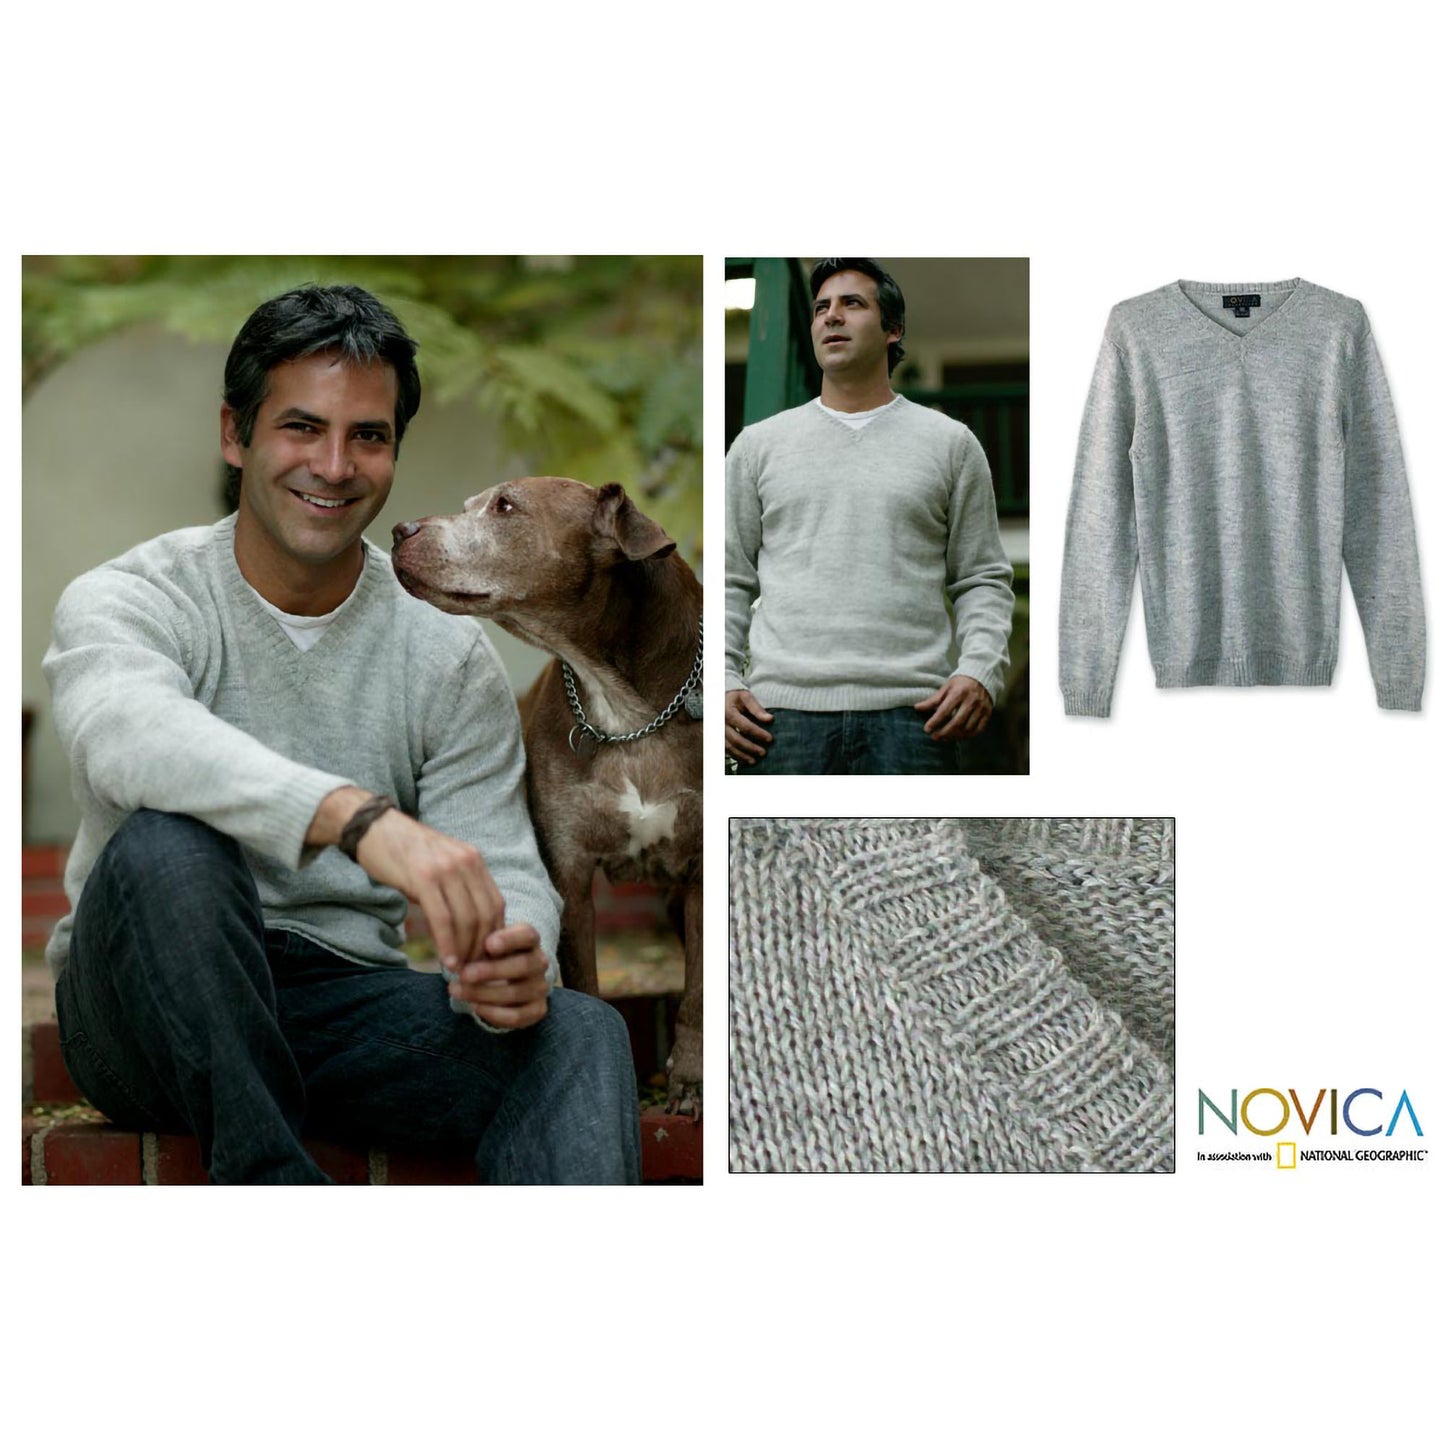 Favorite Memories Men's Gray Sweater